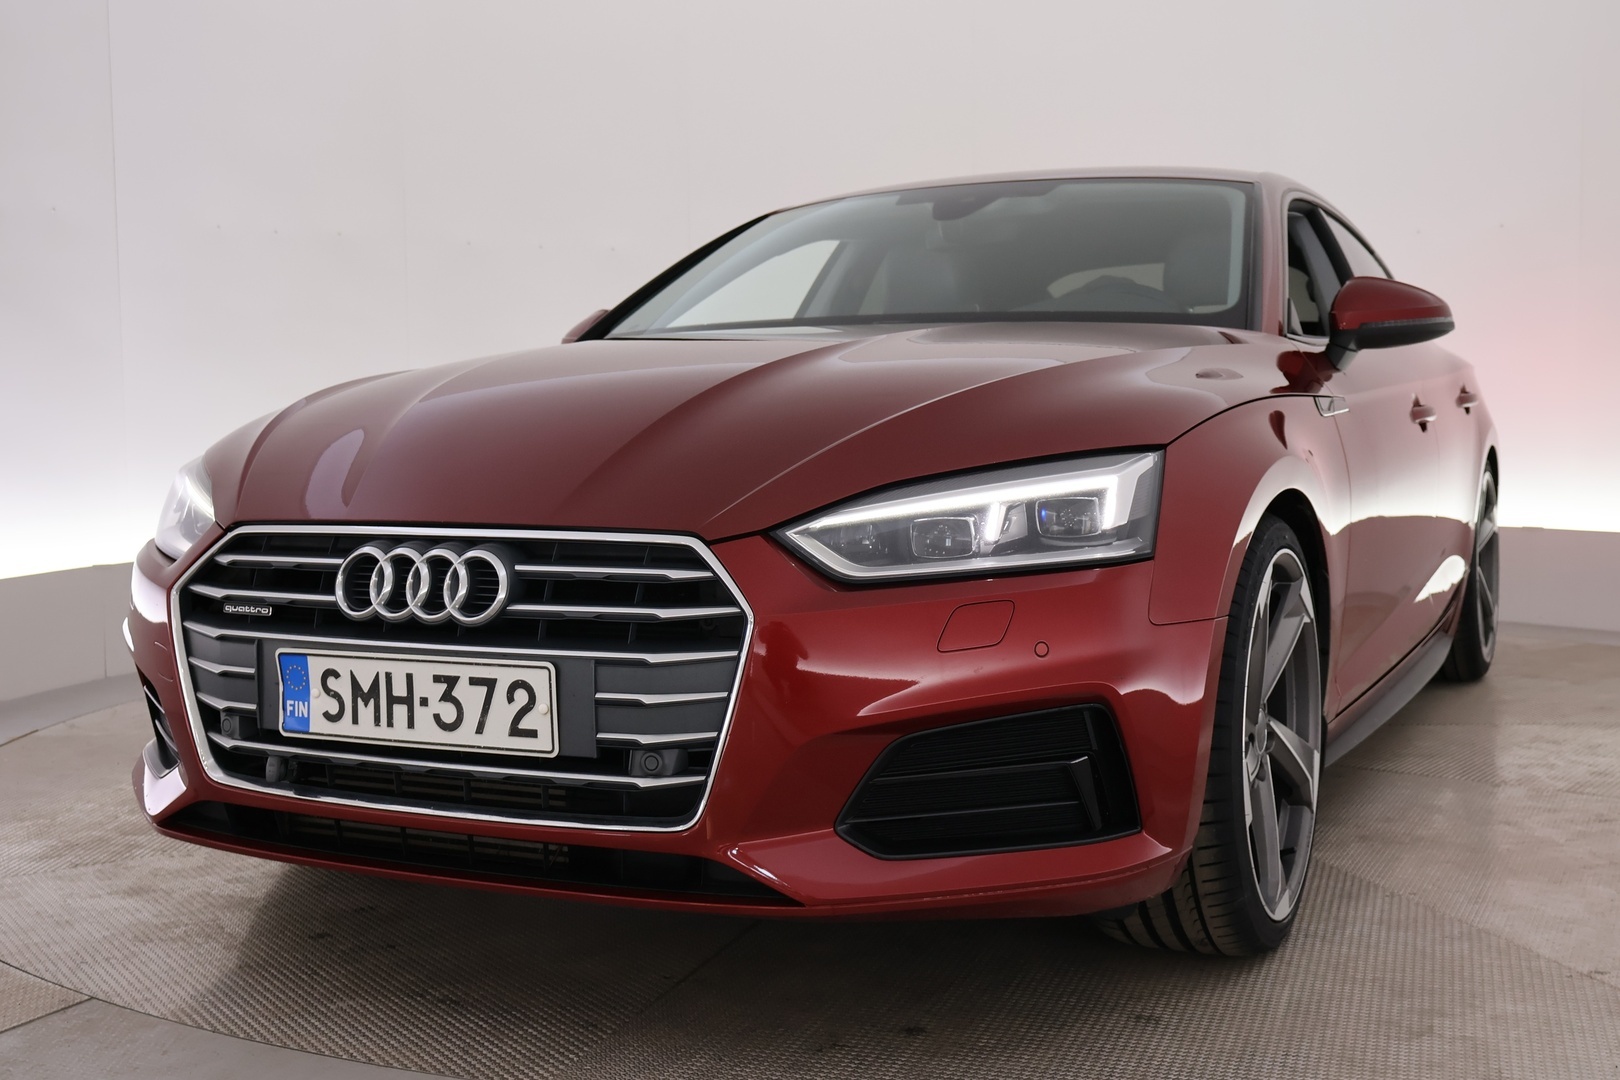 Punainen Viistoperä, Audi A5 – SMH-372